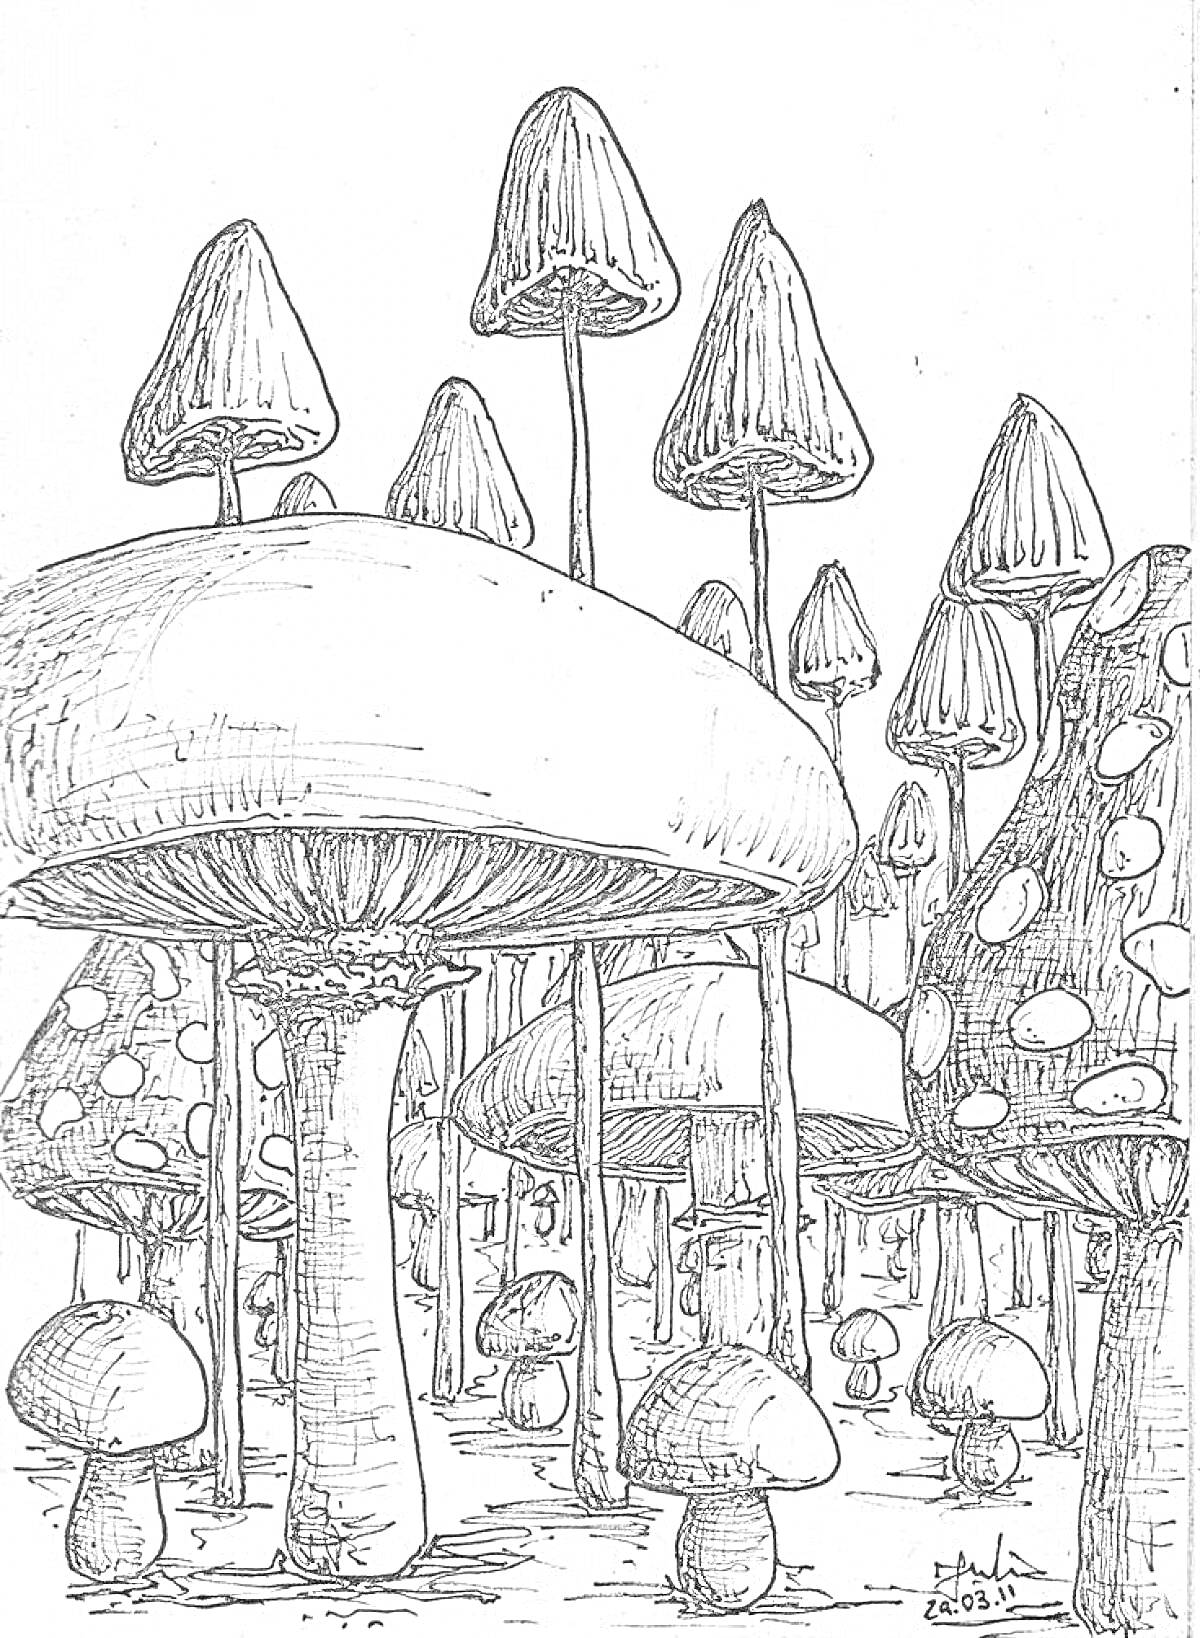 Раскраска Лес мухоморов, крупные и мелкие мухоморы со шляпками различного размера, грибы на переднем и заднем плане